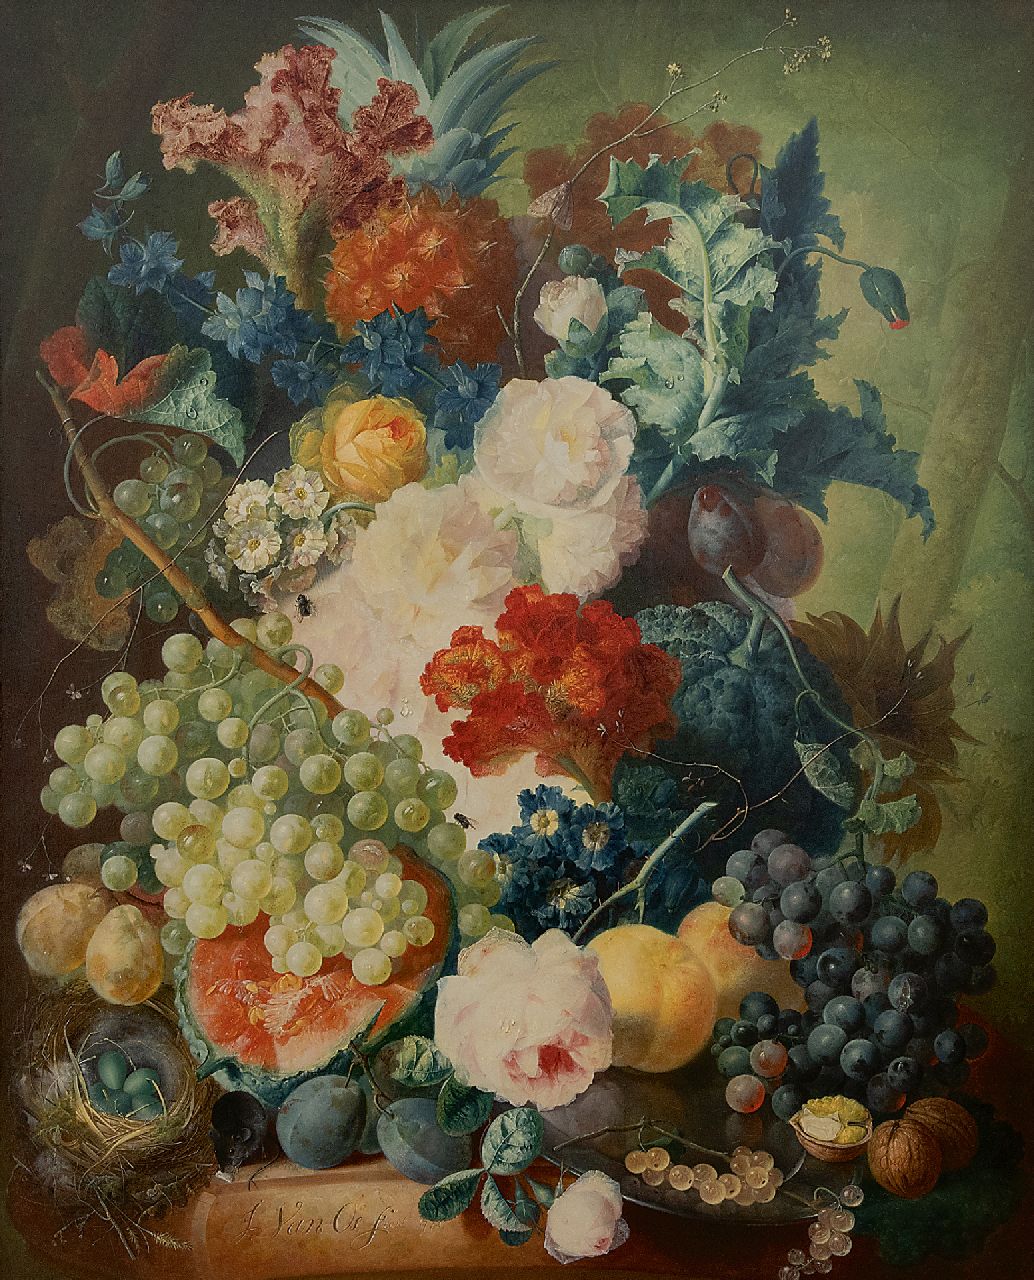 Jan van Os | Stilleven met bloemen, fruit, insecten, een muis en een vogelnest, olieverf op paneel, 70,0 x 56,0 cm, gesigneerd l.o. en gedateerd 1774